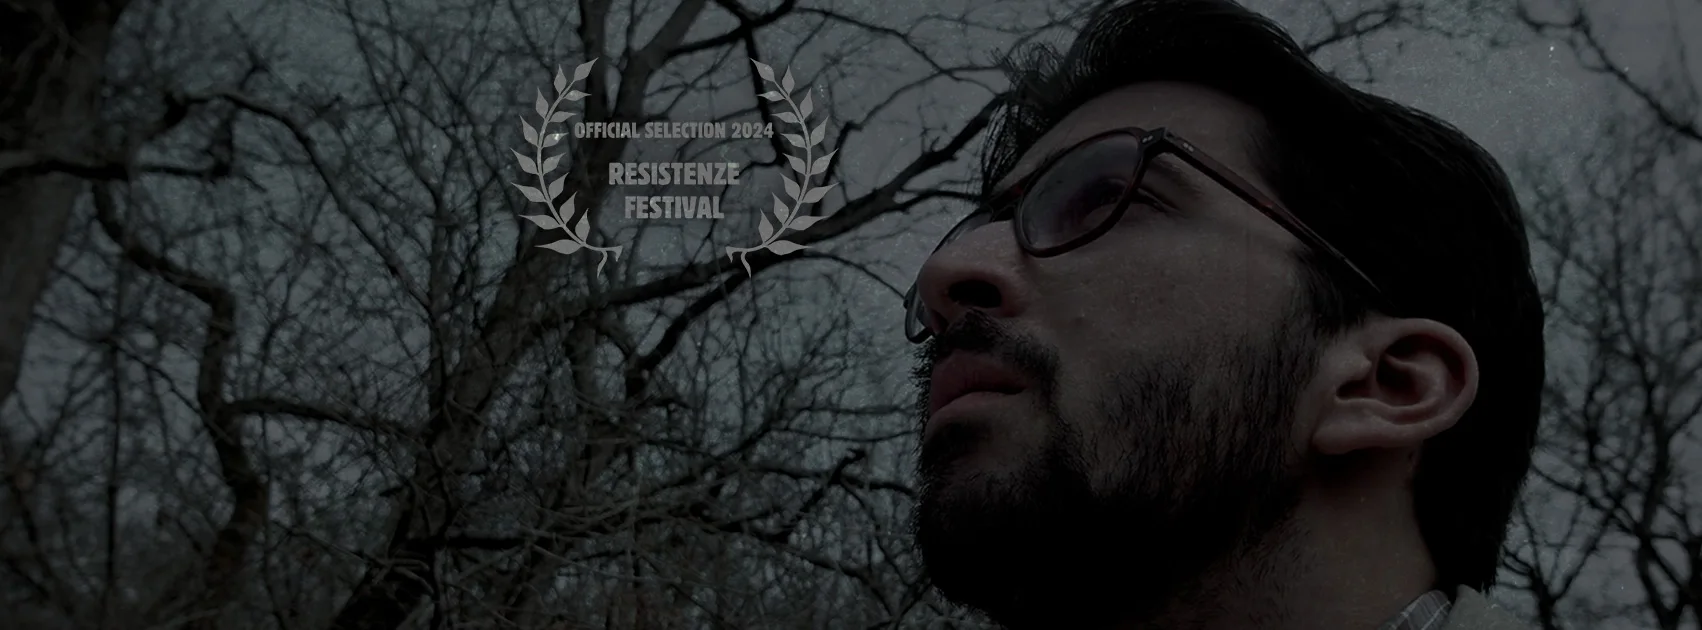 Il cortometraggio "La Ricorrenza" nella selezione ufficiale del Resistenze Festival